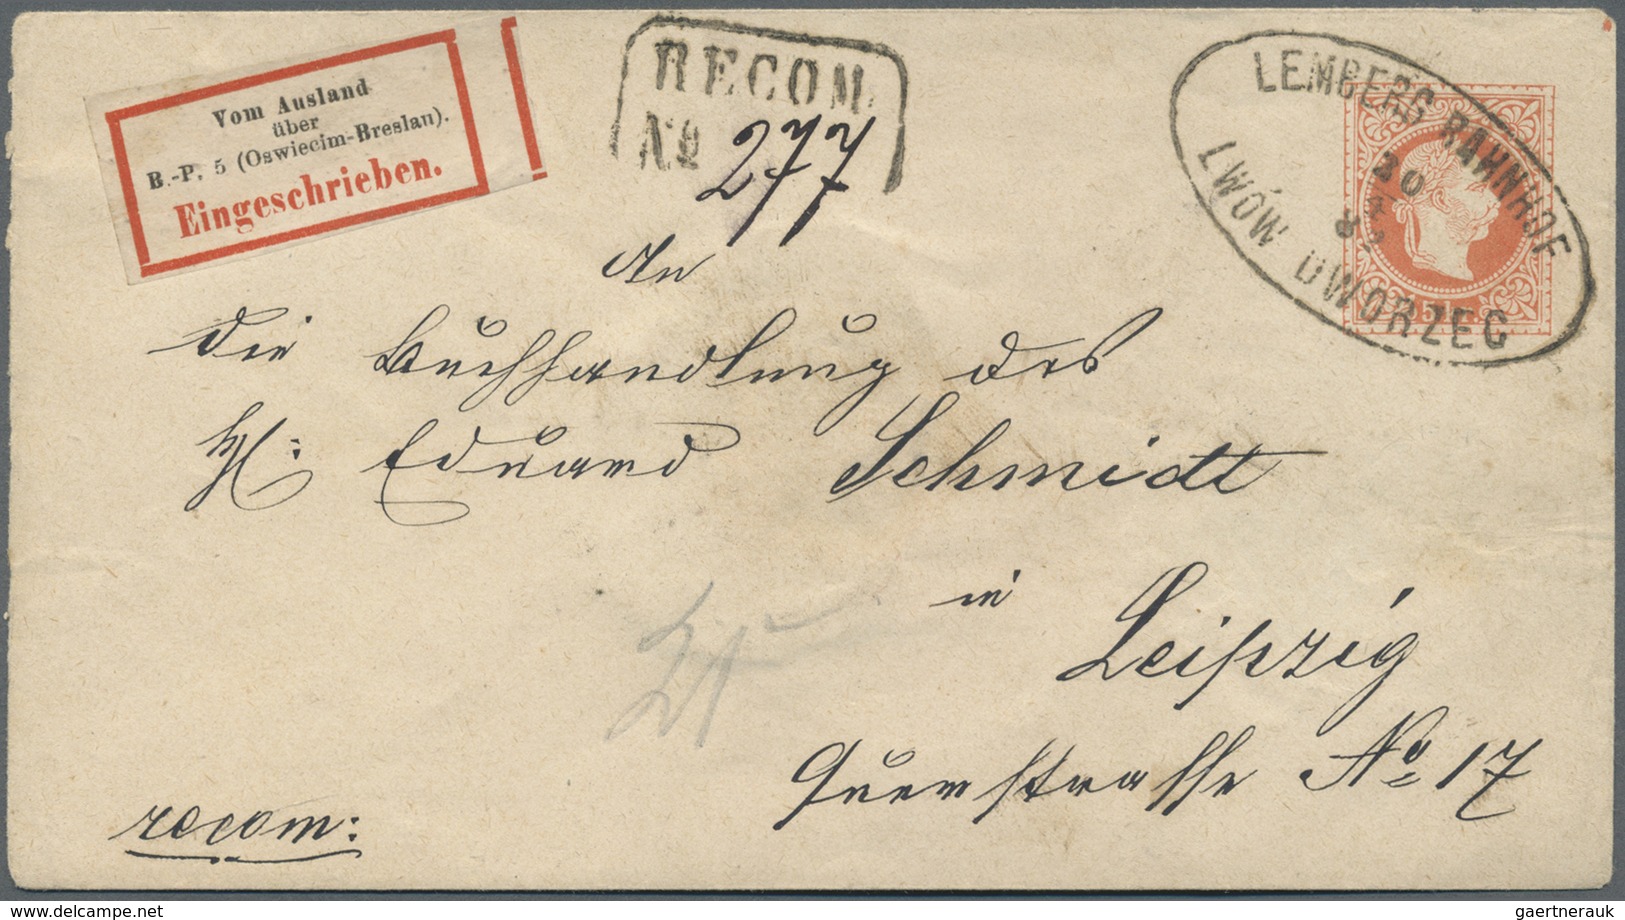 Br/GA Österreich: 1880/1960 (ca.), vielseitige Partie von ca. 100 Briefen und Karten, dabei zwei Zierbrief